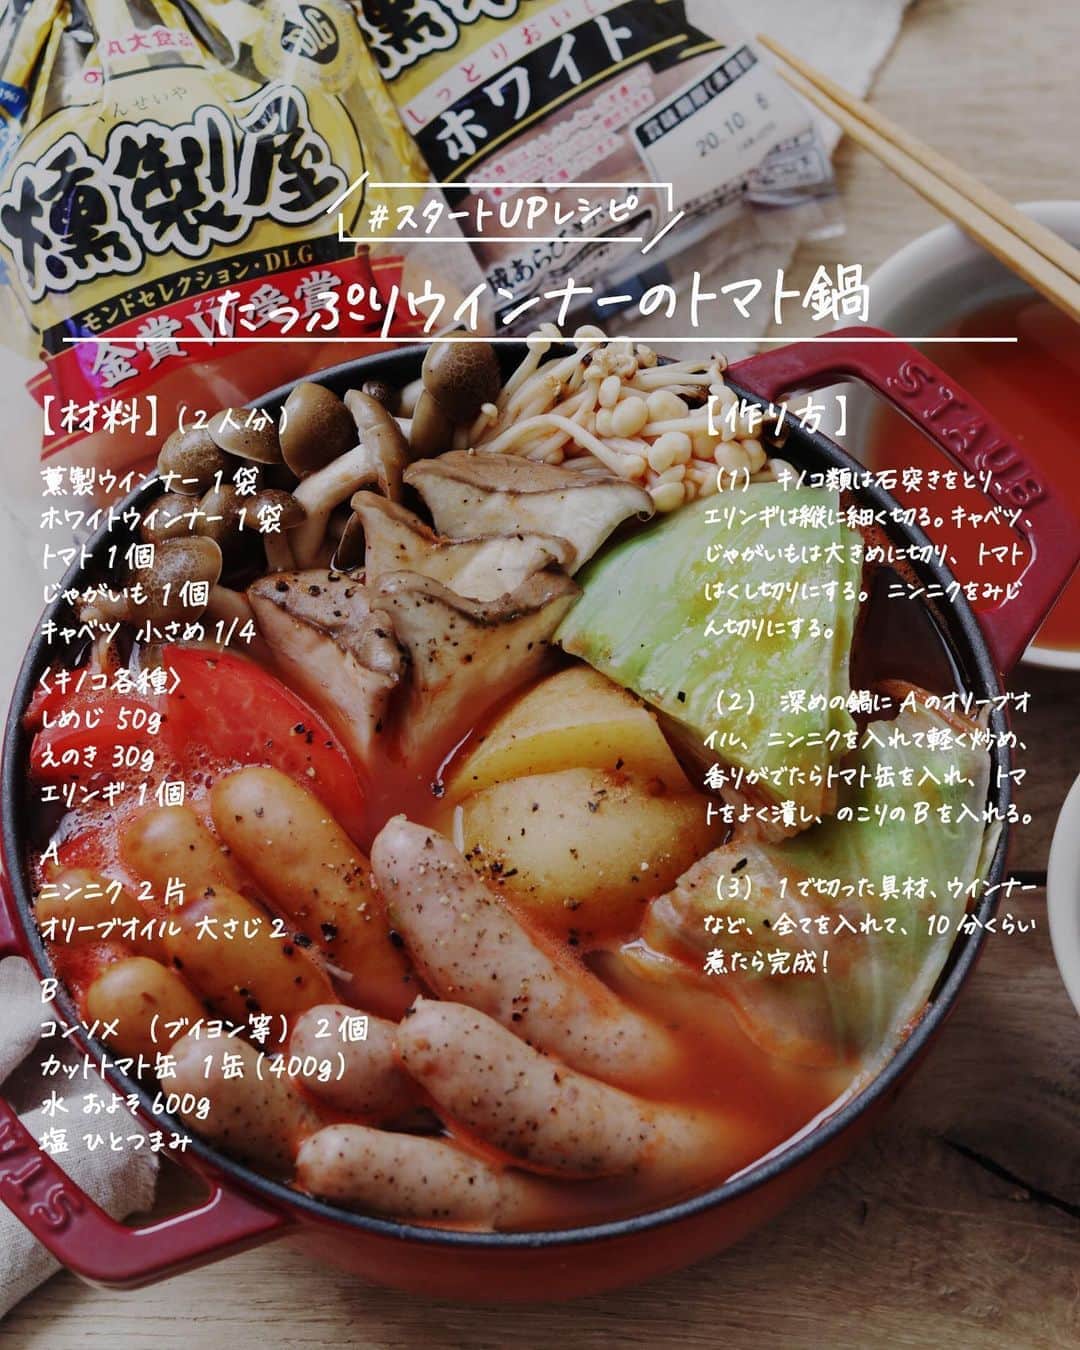 utoshさんのインスタグラム写真 - (utoshInstagram)「【レシピ画像付き】たっぷりウインナーのトマト鍋﻿ ﻿ ーーーーーーーー﻿ これからの季節に大活躍！簡単に作れるウインナーのトマト鍋！﻿ ーーーーーー✂︎ー﻿ ﻿ こんにちは🙋🏻﻿ ﻿ ウインナーが美味しいお鍋の季節になりましたね。僕はお鍋でぐつぐつ煮て、パンパンに膨らんだウインナーをパリッと食べるのが大好きです！美味しいですよね。﻿ ﻿ 今回はホワイトウインナーも使って、トマト鍋を作ってみました。燻製のウインナーもホワイトウインナーもトマト鍋にすると美味しいです！﻿ ﻿ ー✂︎ー﻿ ﻿ ﻿ このトマト鍋のキモは実はニンニク！最初にニンニクをオリーブオイルで炒めてからトマト缶を投入します！この作業があるかないかで全然味が違います！めちゃくちゃ美味しくなりますよ！ニンニクはたっぷりの方がいいのでオススメです！﻿ ﻿ ﻿ ﻿ レシピはこちら↓﻿ ＿＿＿＿＿﻿ ﻿ たっぷりウインナーのトマト鍋（2人分）﻿ ﻿ 【材料】﻿ 燻製ウインナー 1袋﻿ ホワイトウインナー 1袋﻿ ﻿ トマト 1個﻿ じゃがいも 1個﻿ キャベツ 小さめ1/4﻿ ﻿ 〈キノコ各種〉﻿ しめじ 50g﻿ えのき 30g﻿ エリンギ 1個﻿ ﻿ A﻿ ニンニク 2片﻿ オリーブオイル 大さじ2﻿ ﻿ B﻿ コンソメ（ブイヨン等） 2個﻿ トマト缶（カットトマト） 1缶（400g）﻿ 水 およそ600g﻿ 塩 ひとつまみ﻿ ﻿ ﻿ 【作り方】﻿ （1）キノコ類は石突きをとり、エリンギは縦に細く切る。キャベツ、じゃがいもは大きめに切り、トマトはくし切りにする。ニンニクをみじん切りにする。﻿ ﻿ （2）深めの鍋にAのオリーブオイル、ニンニクを入れて軽く炒め、香りがでたらトマト缶を入れ、トマトをよく潰し、のこりのBを入れる。﻿ ﻿ （3）1で切った具材、ウインナーなど、全てを入れて、10分くらい煮たら完成！﻿ ﻿ ＿＿＿＿＿﻿ ﻿ ぜひ作ってみてくださいね。﻿ ﻿ ﻿ #燻製屋熟成あらびきウインナーホワイト #鍋レシピ #トマト鍋 #PR﻿ #スタートUPレシピ #スタートアップレシピ #ややはつレシピ #とりあえず野菜食 #やさしい飯 #在宅楽飯﻿ ﻿ #おうちごはん #レシピ #時短料理 #簡単レシピ #献立 #お家ご飯 #手料理 #今日のごはん #フーディーテーブル #japanesefoods」10月6日 23時07分 - utosh